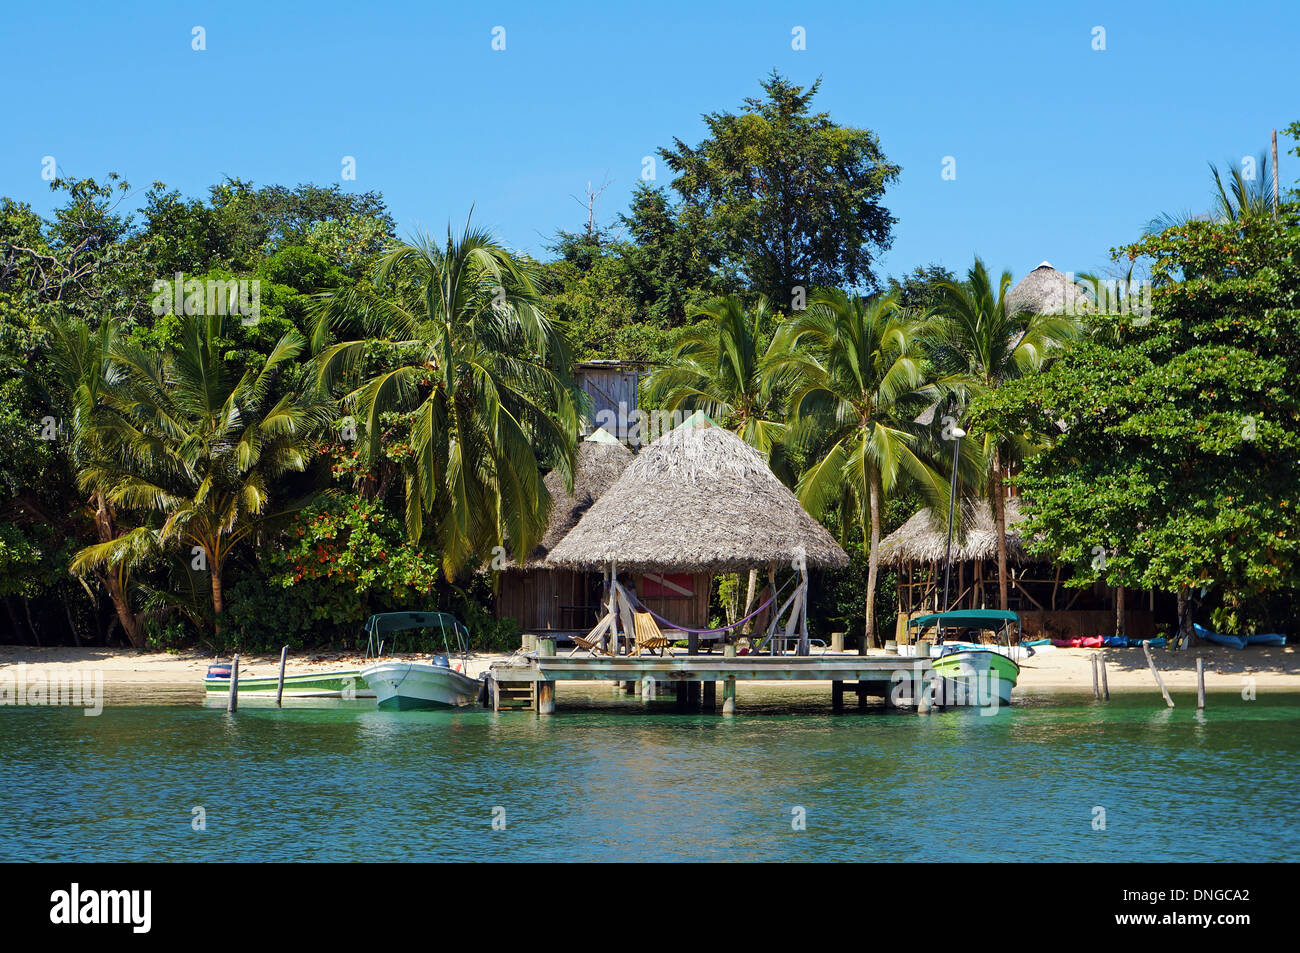 Am Strand Eco resort mit strohgedeckten Hütte über Wasser und tropische Vegetation, Karibik, Bocas del Toro, Panama Stockfoto